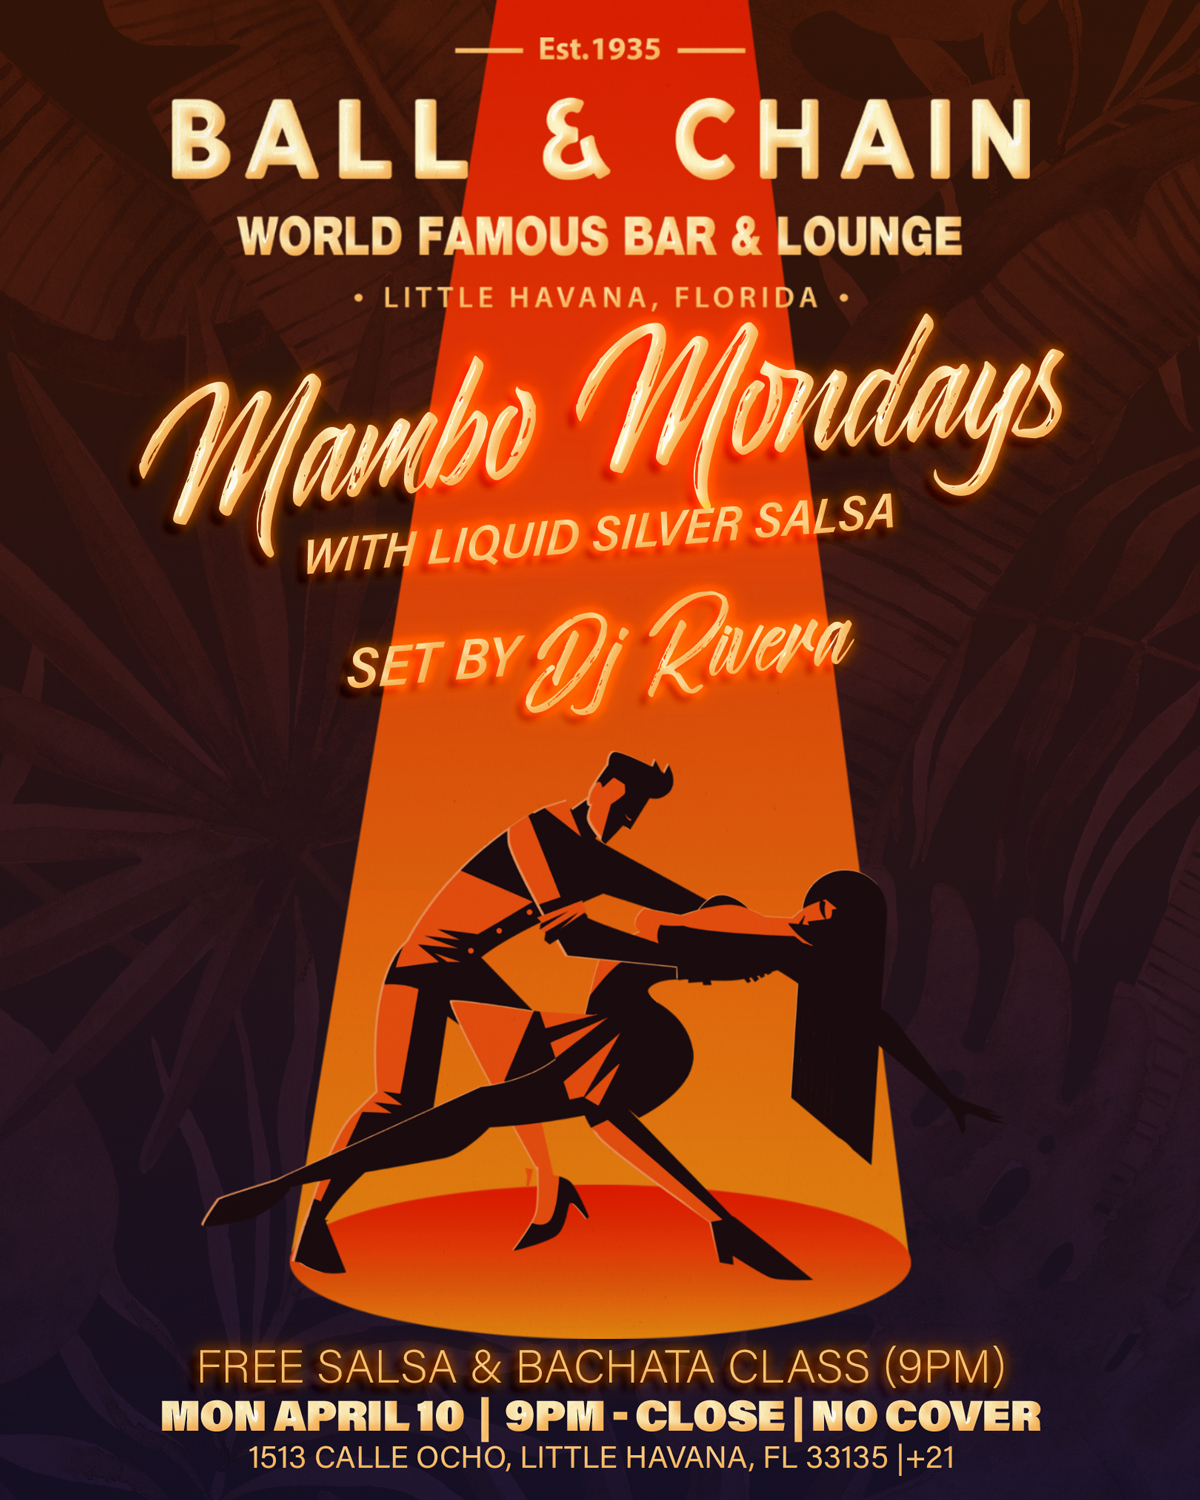 Mambo Mondays - Ball & Chain